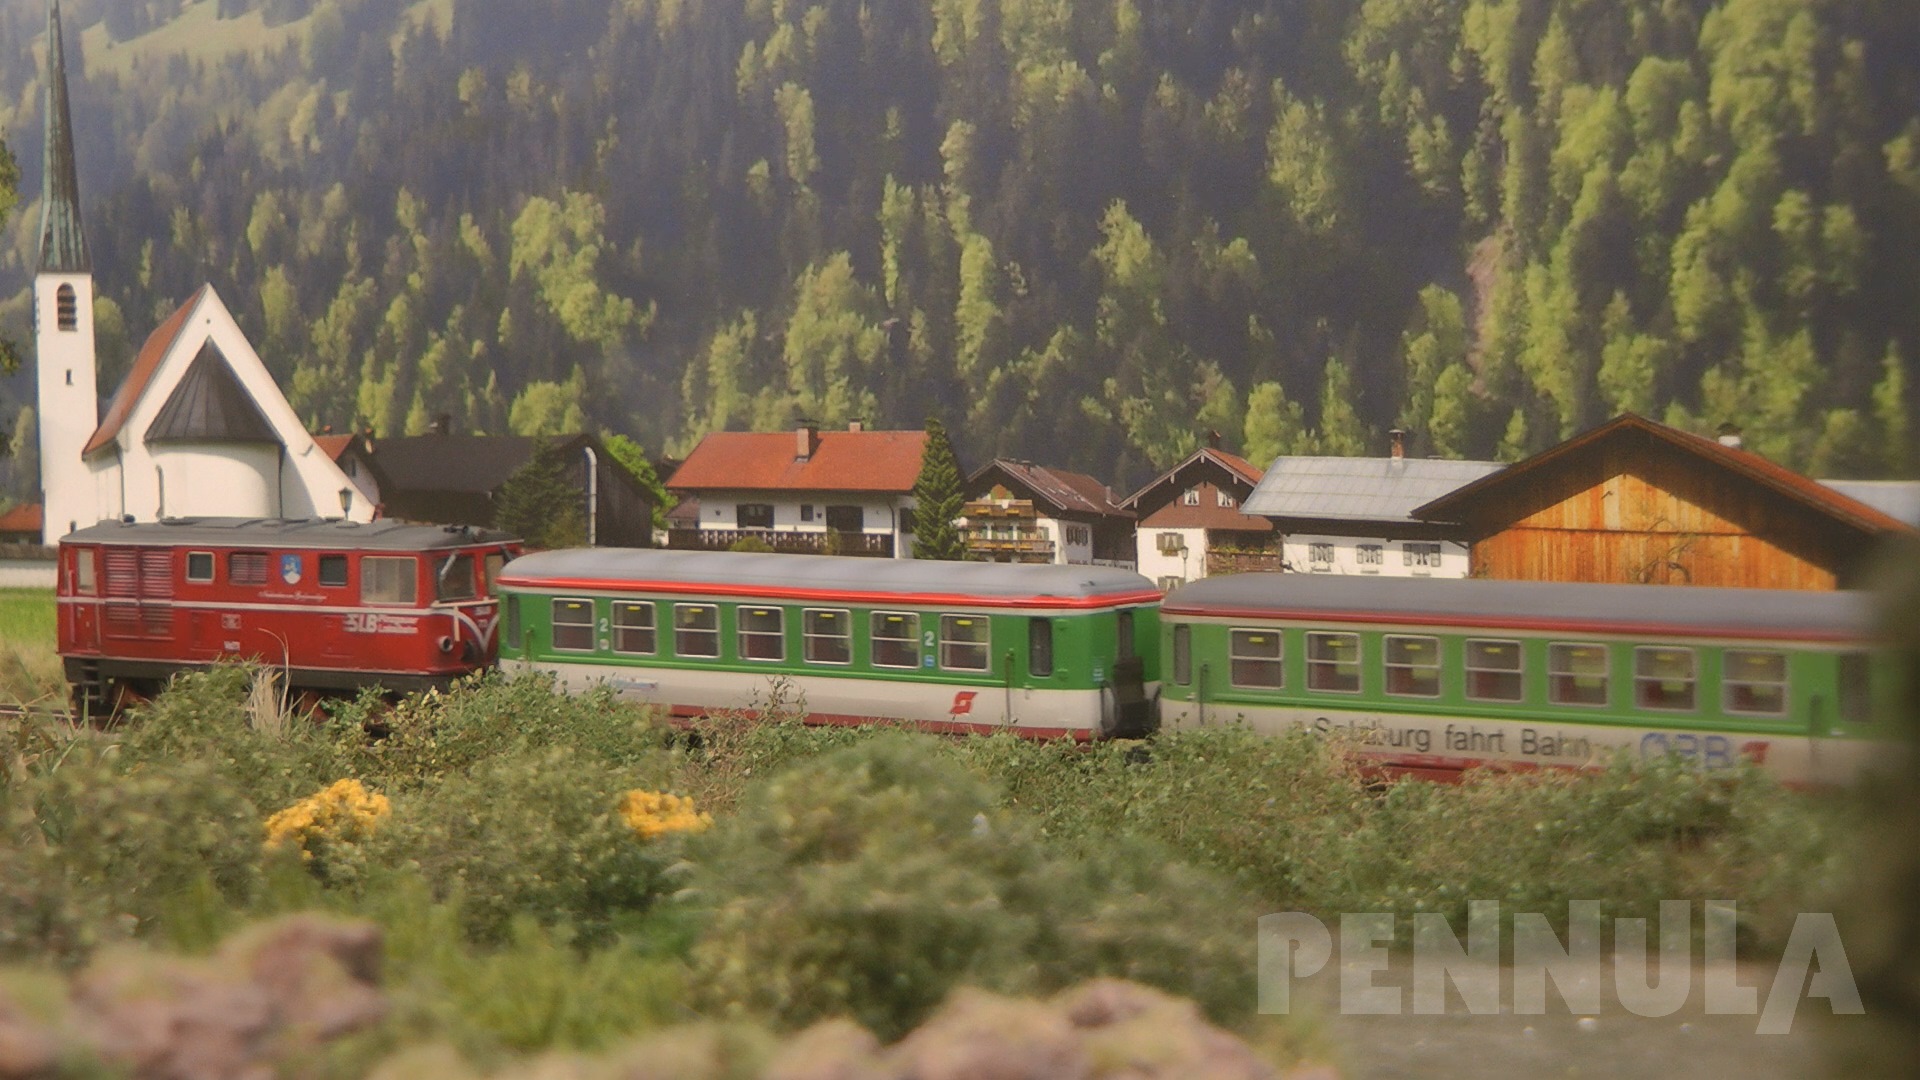 Die Magie des JOWI Modellbahn Hintergrund: Die Pinzgauer Lokalbahn der Spur H Nuller aus Willich